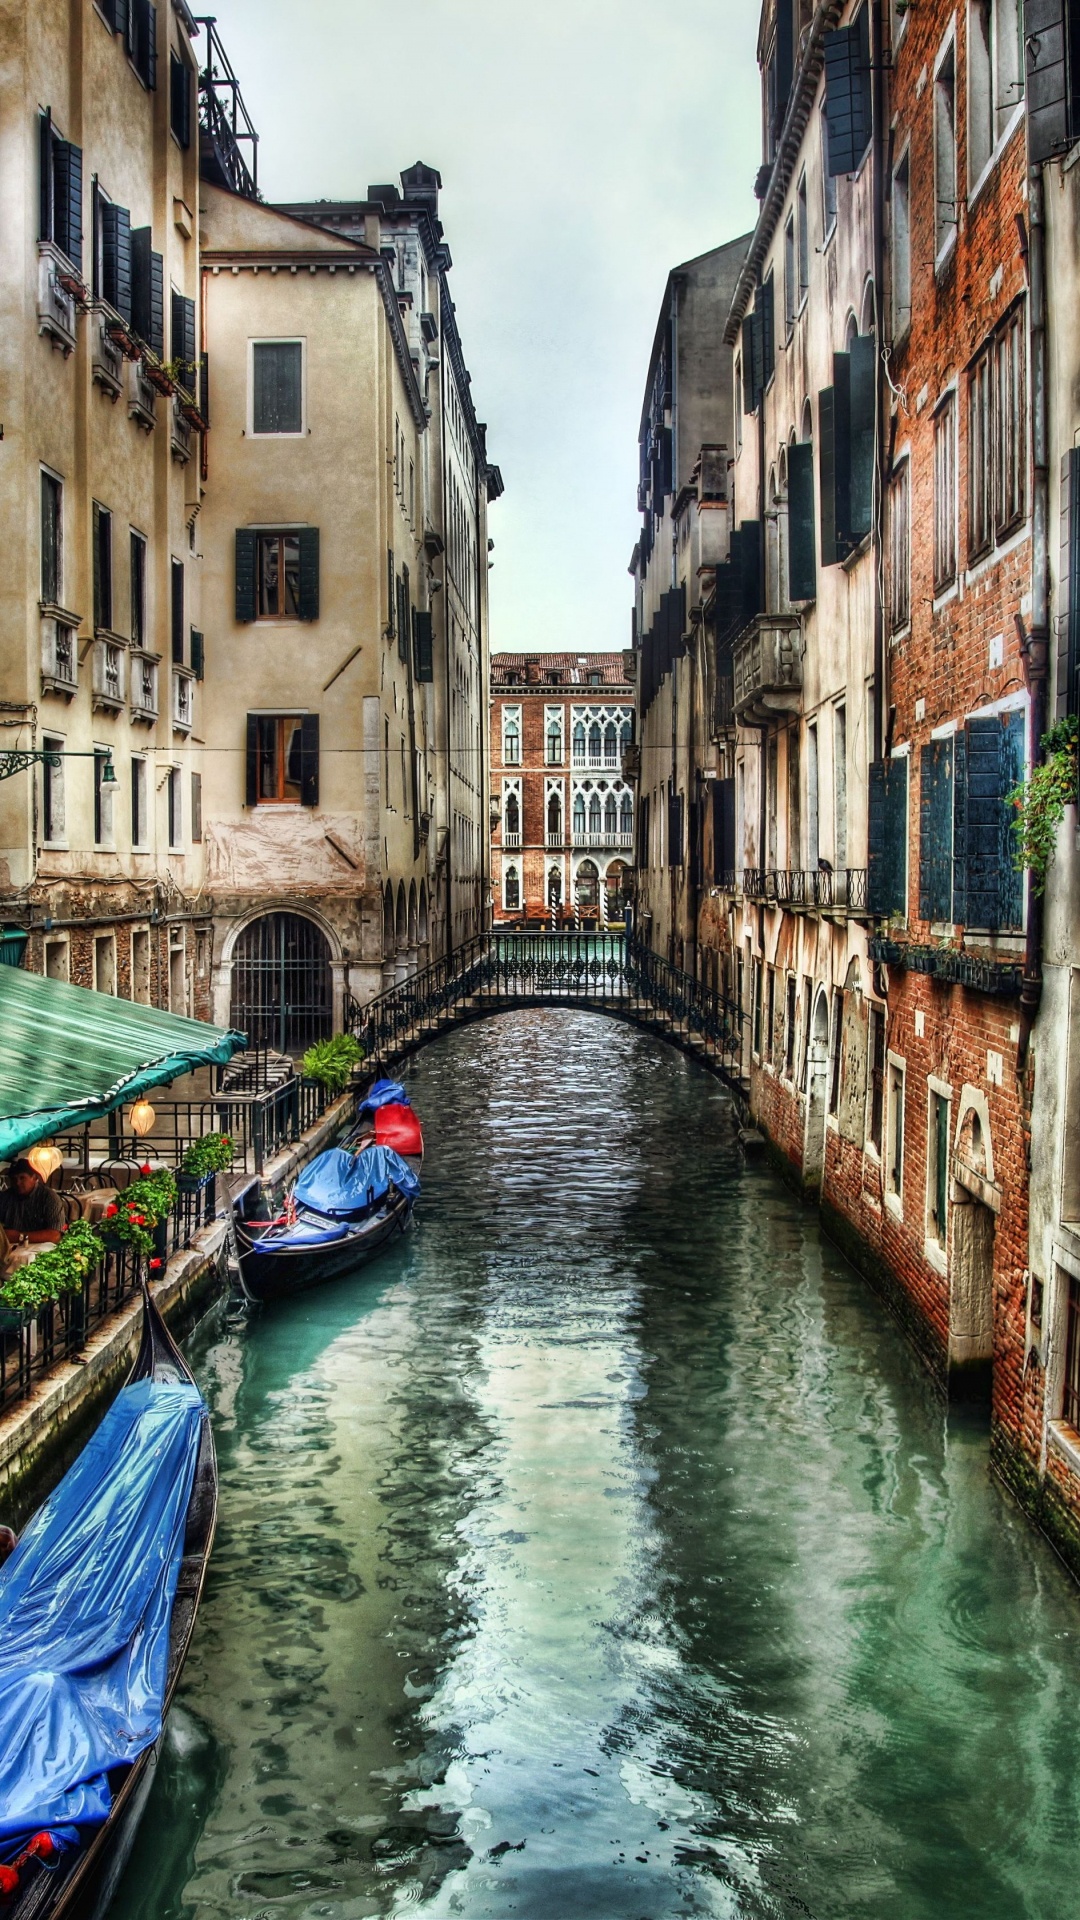 威尼斯, 运河, 滑雪缆车, 巷子里, 旅游业 壁纸 1080x1920 允许